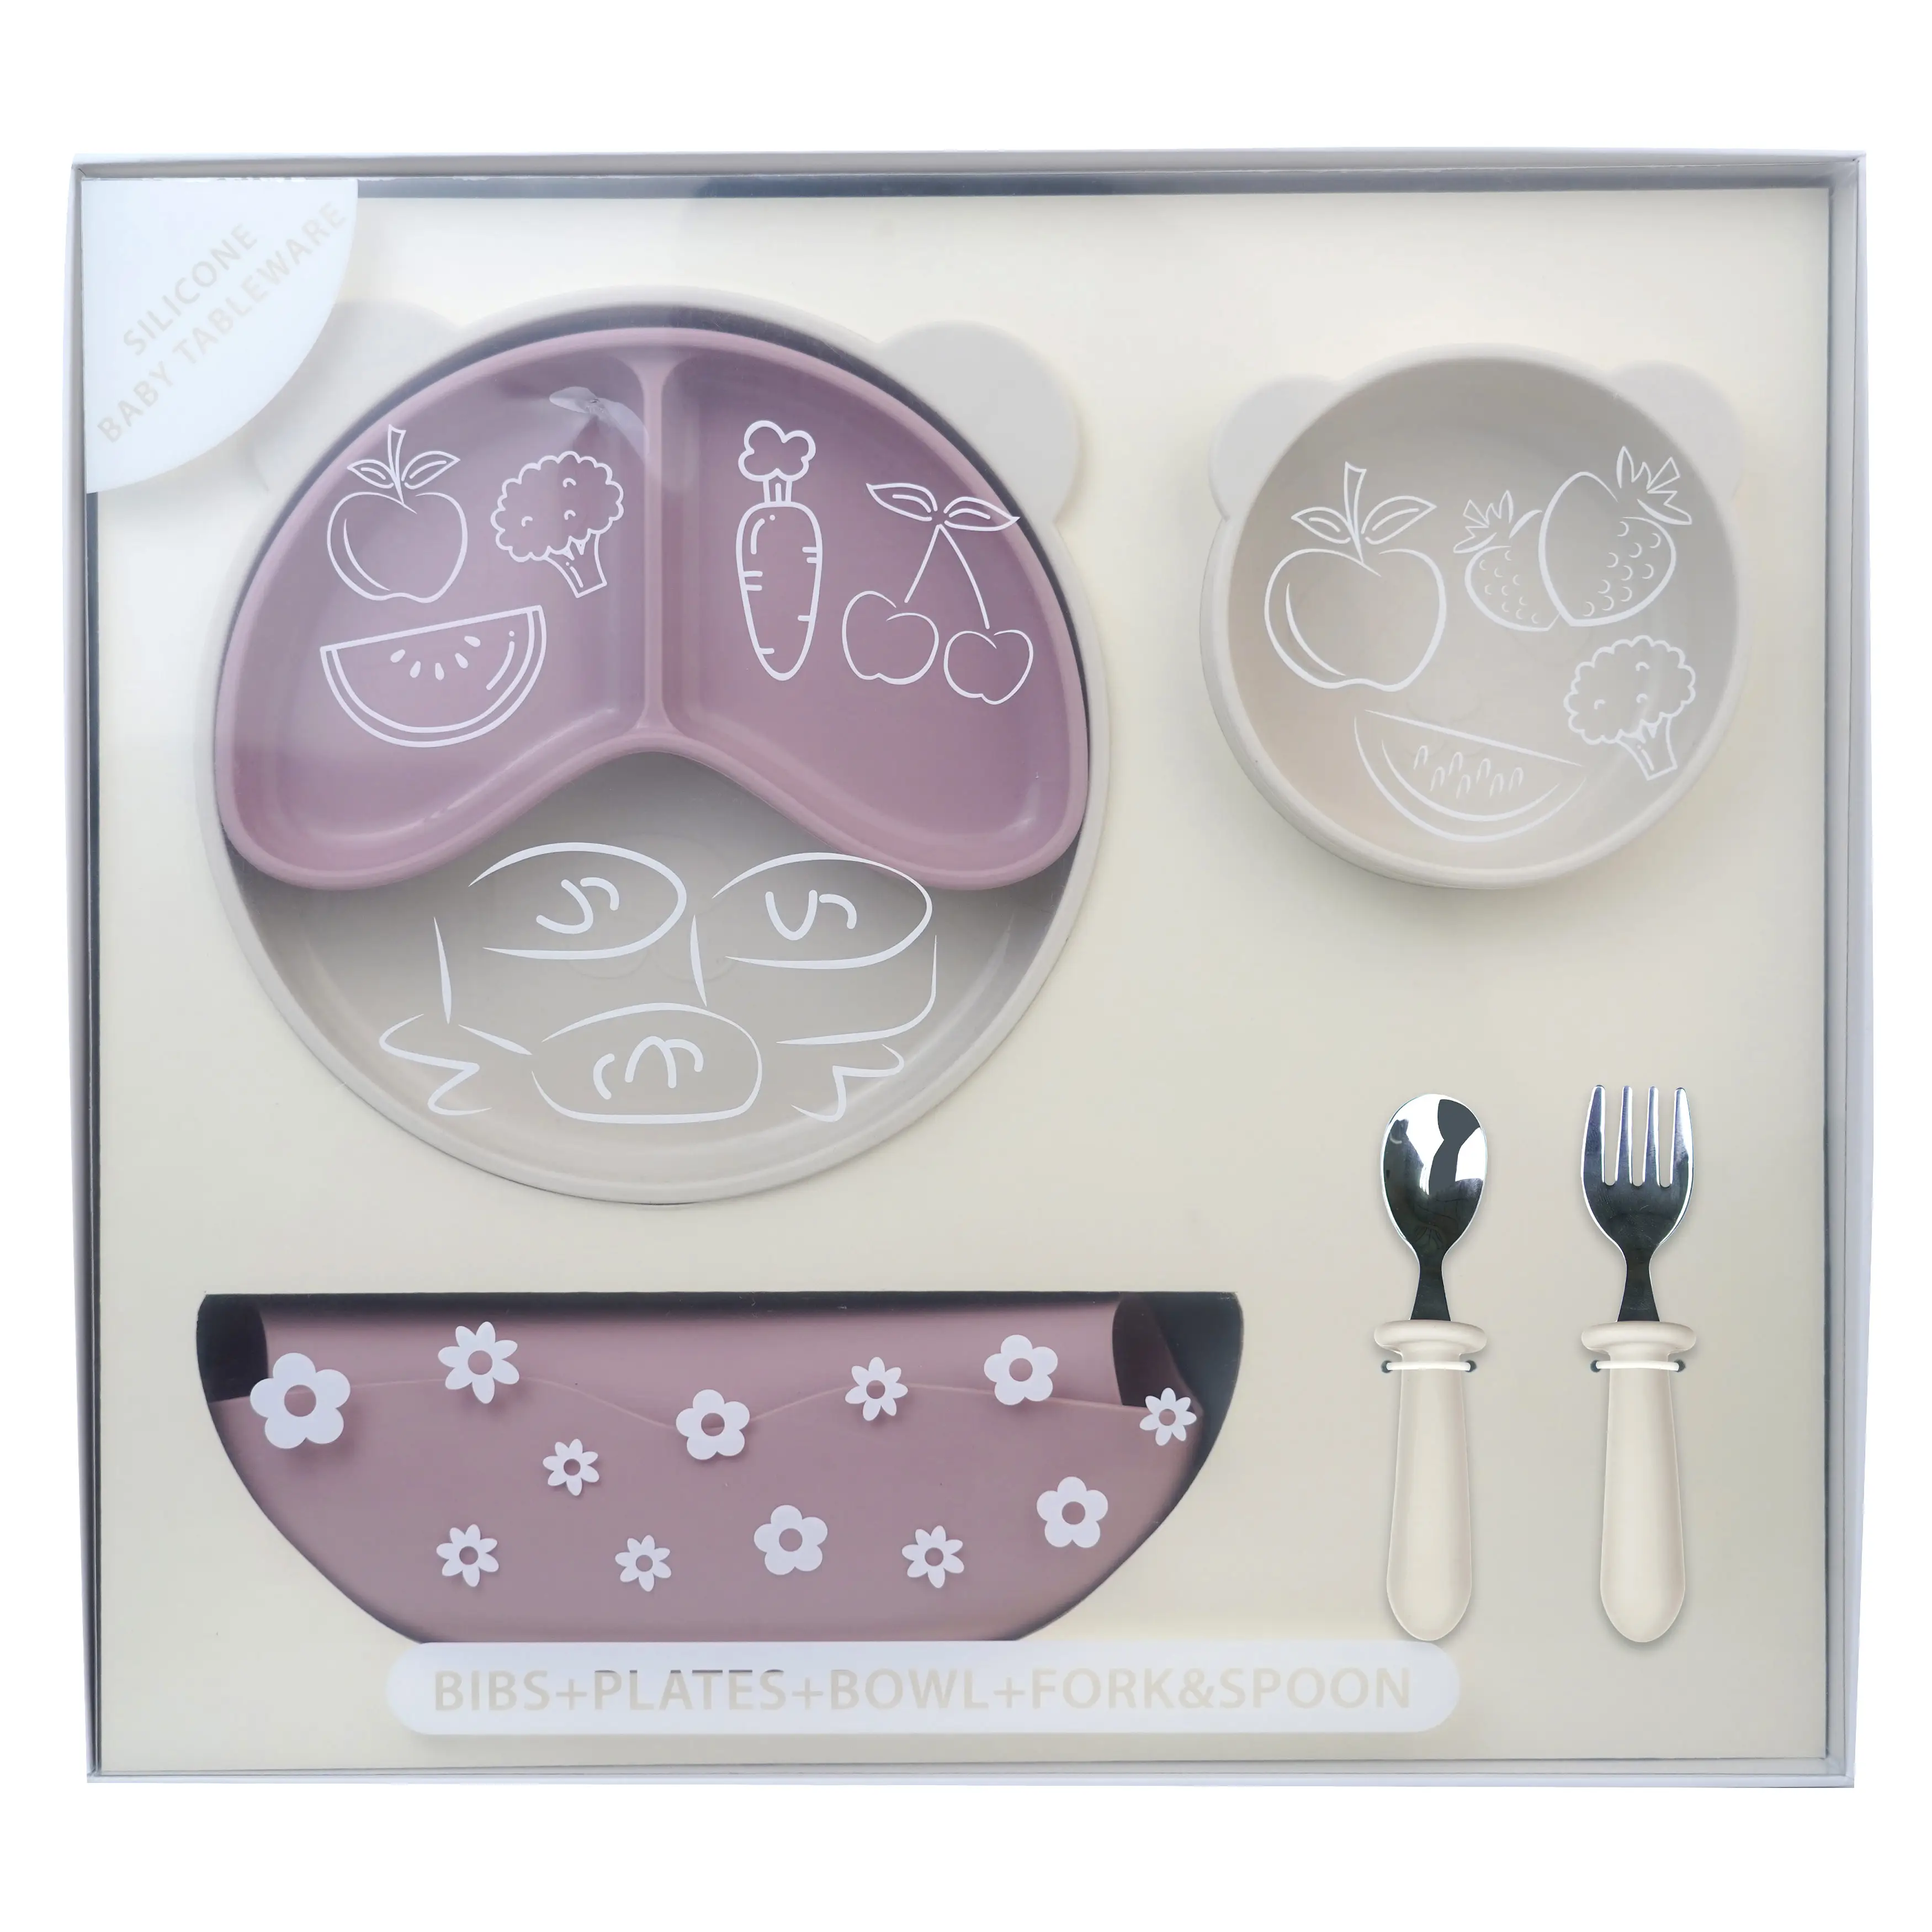 6 قطع من أدوات مائدة الأطفال من السيليكون المشتت إلى أطباق مختلفة مصاصة من شكل الباندا والشوكة والملعقة مجموعة أدوات مائدة إطعام الأطفال من السيليكون